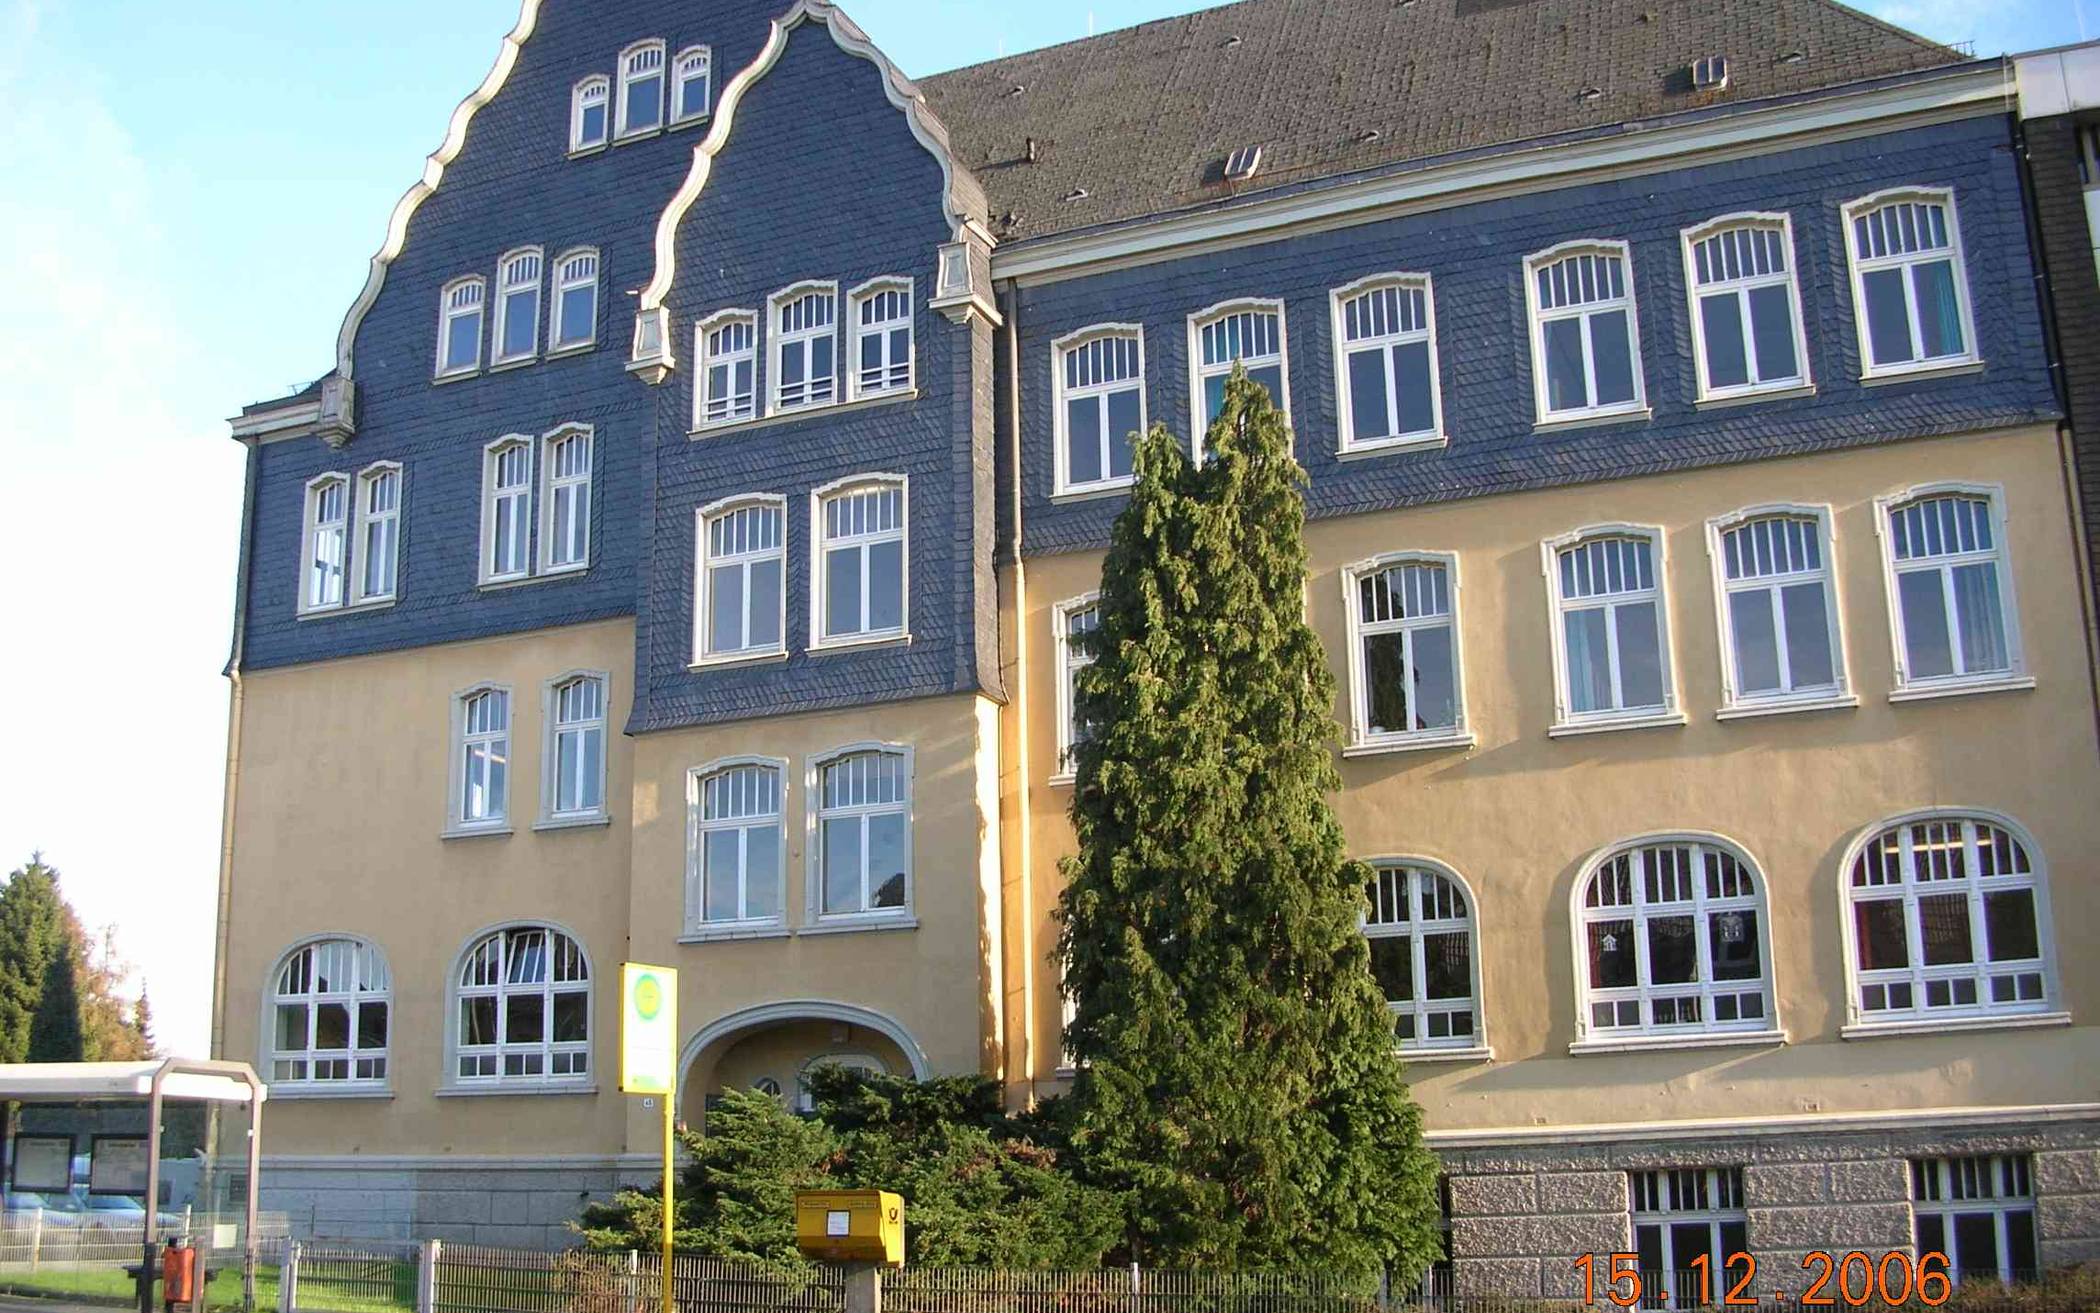  Das Foto stammt von 2006 und zeigt das denkmalgeschützte Schulgebäude.   